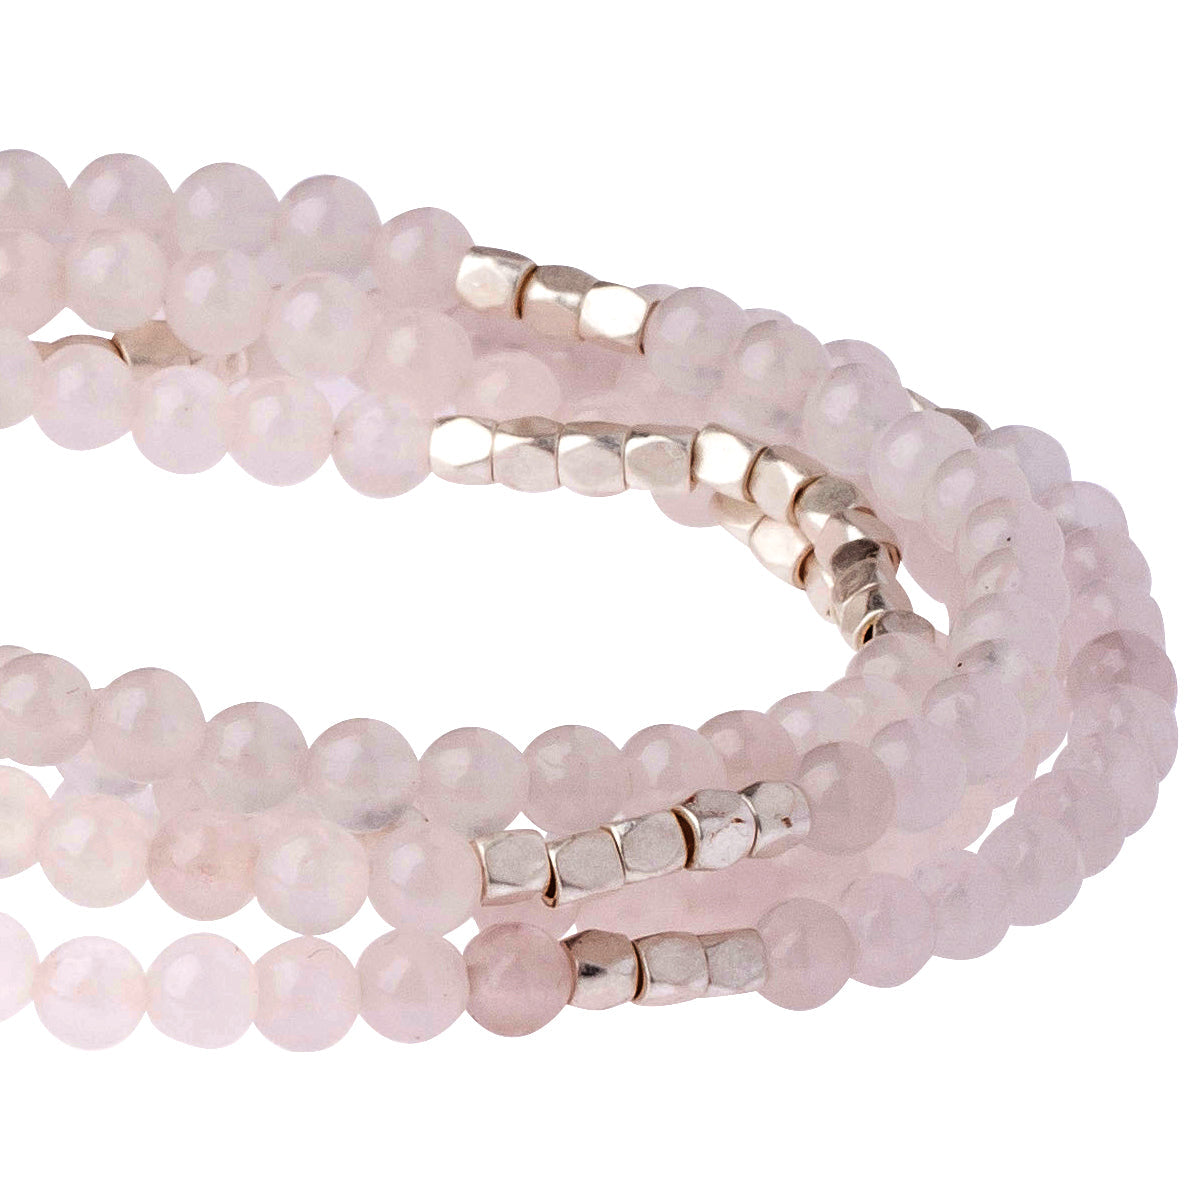 Stone Wrap Bracelet/Necklace- Rose quartz/Silver